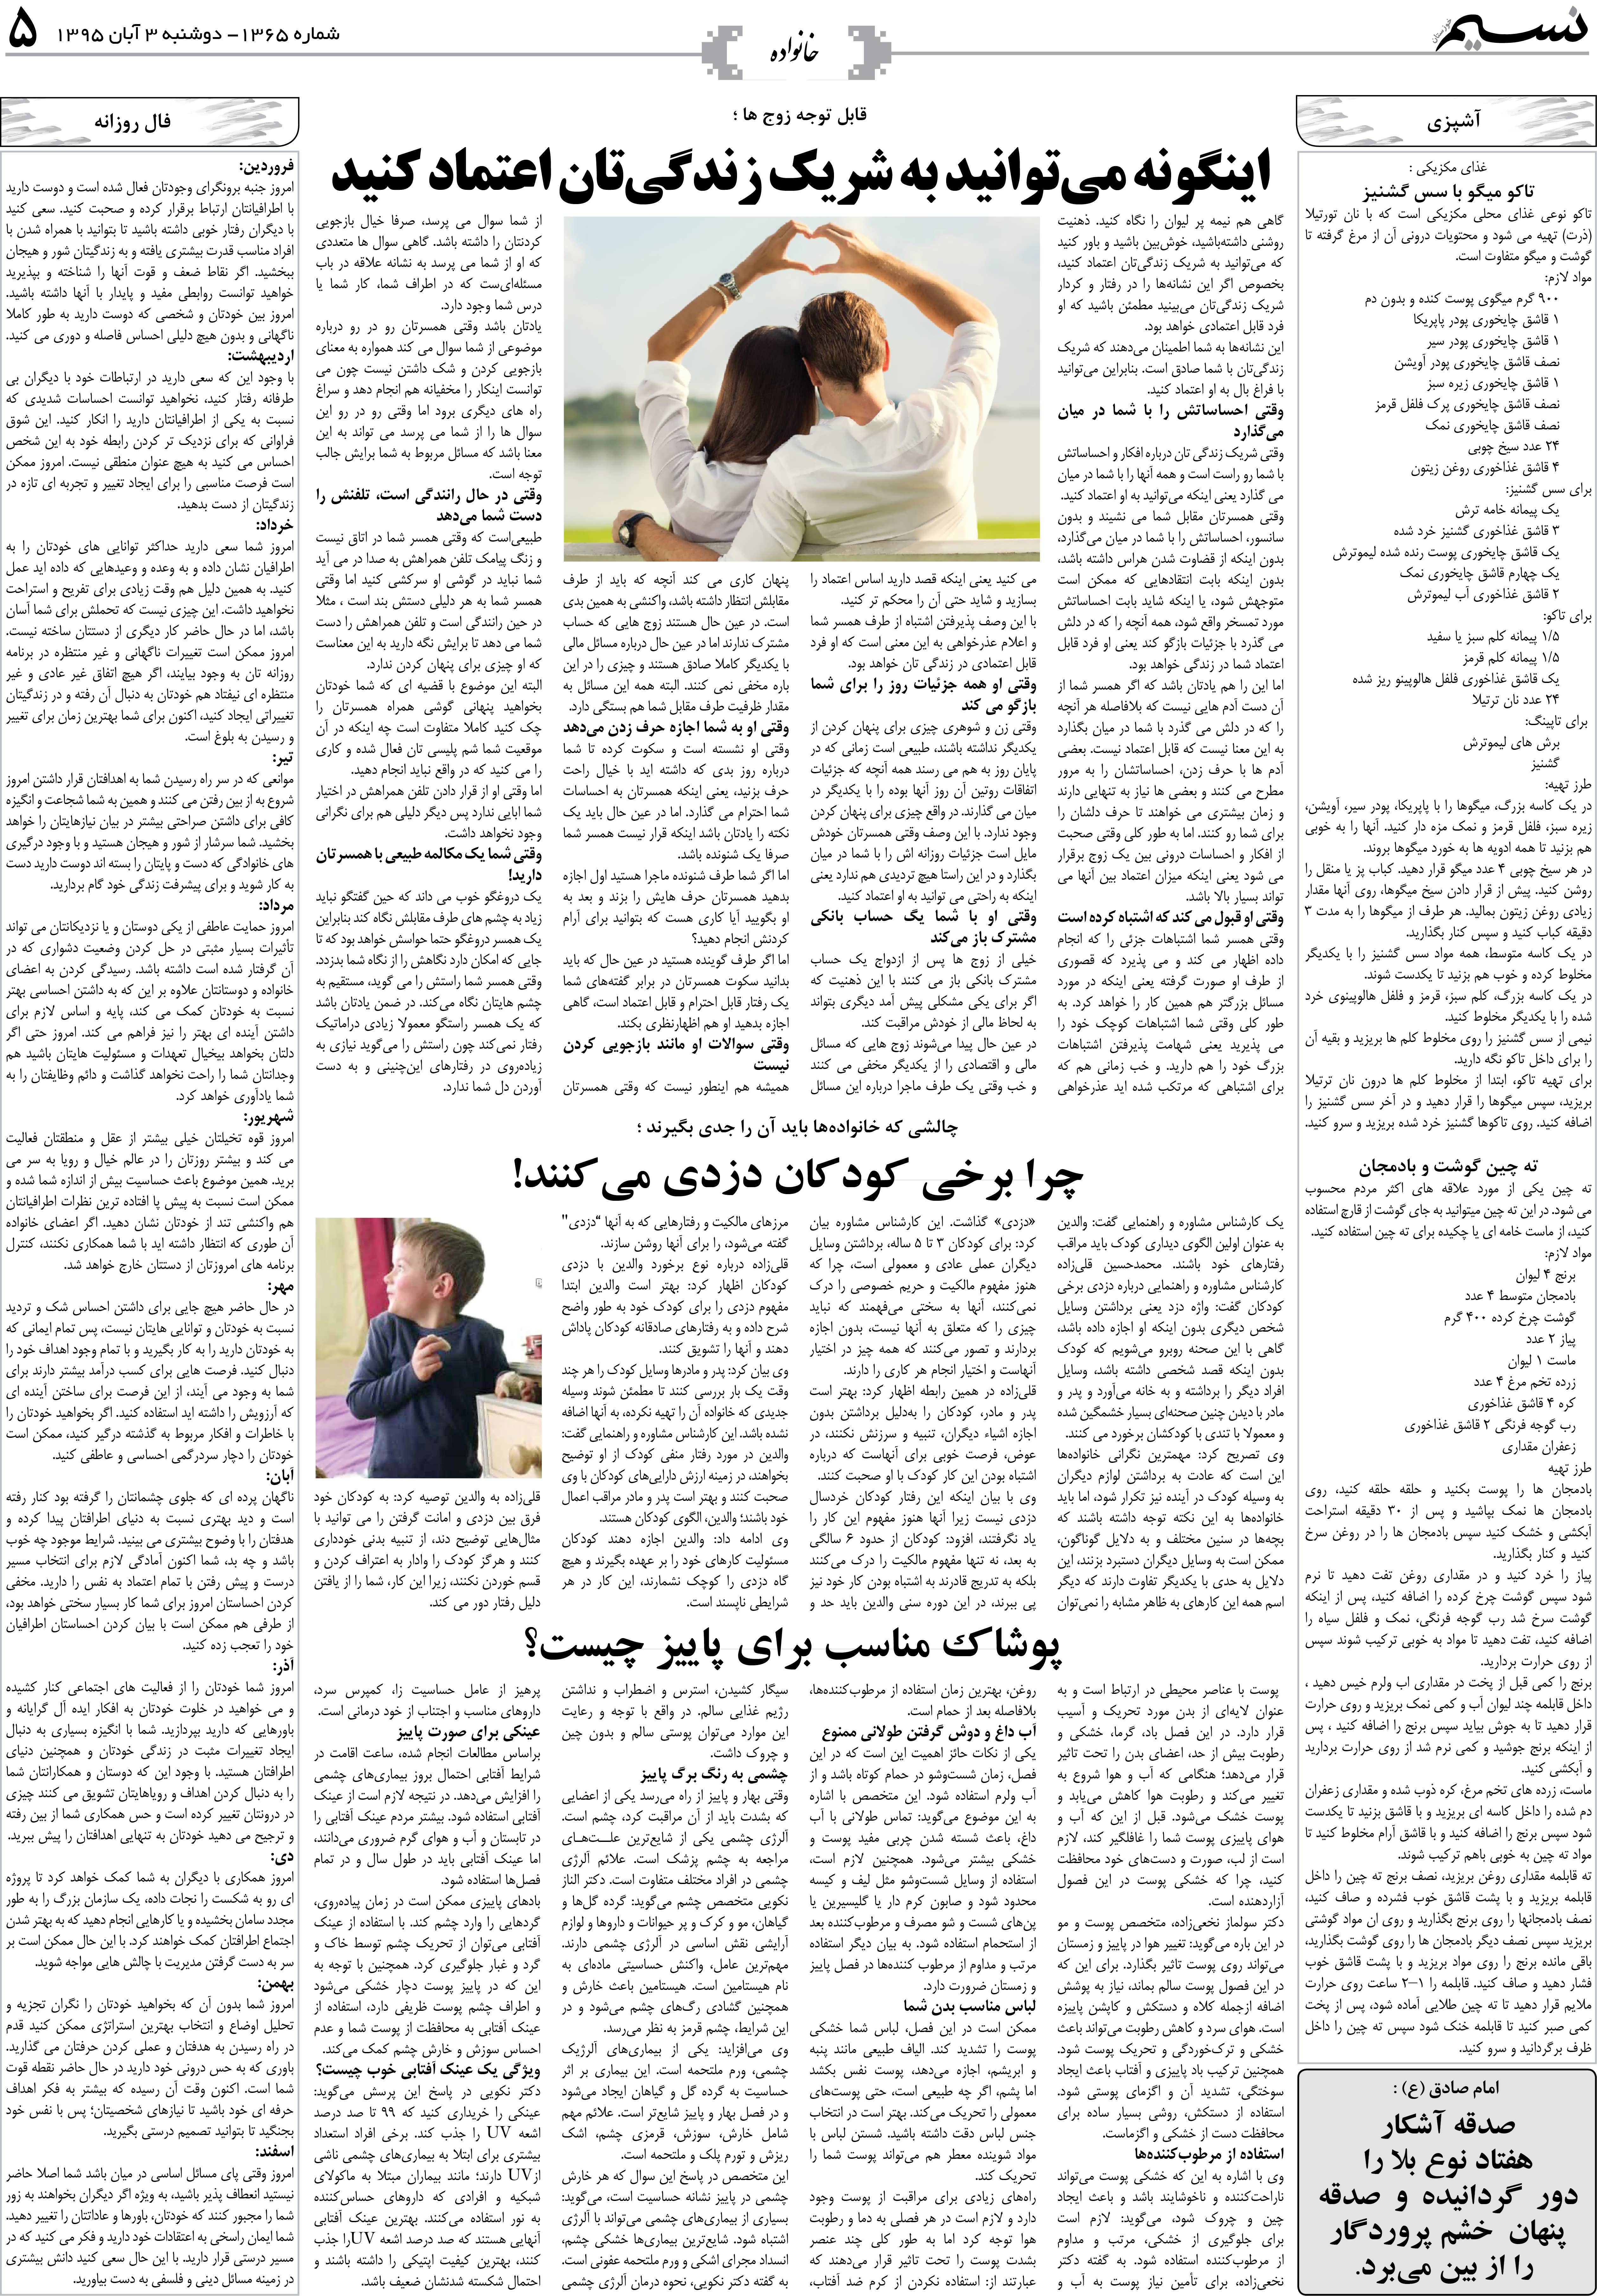 صفحه خانواده روزنامه نسیم شماره 1365